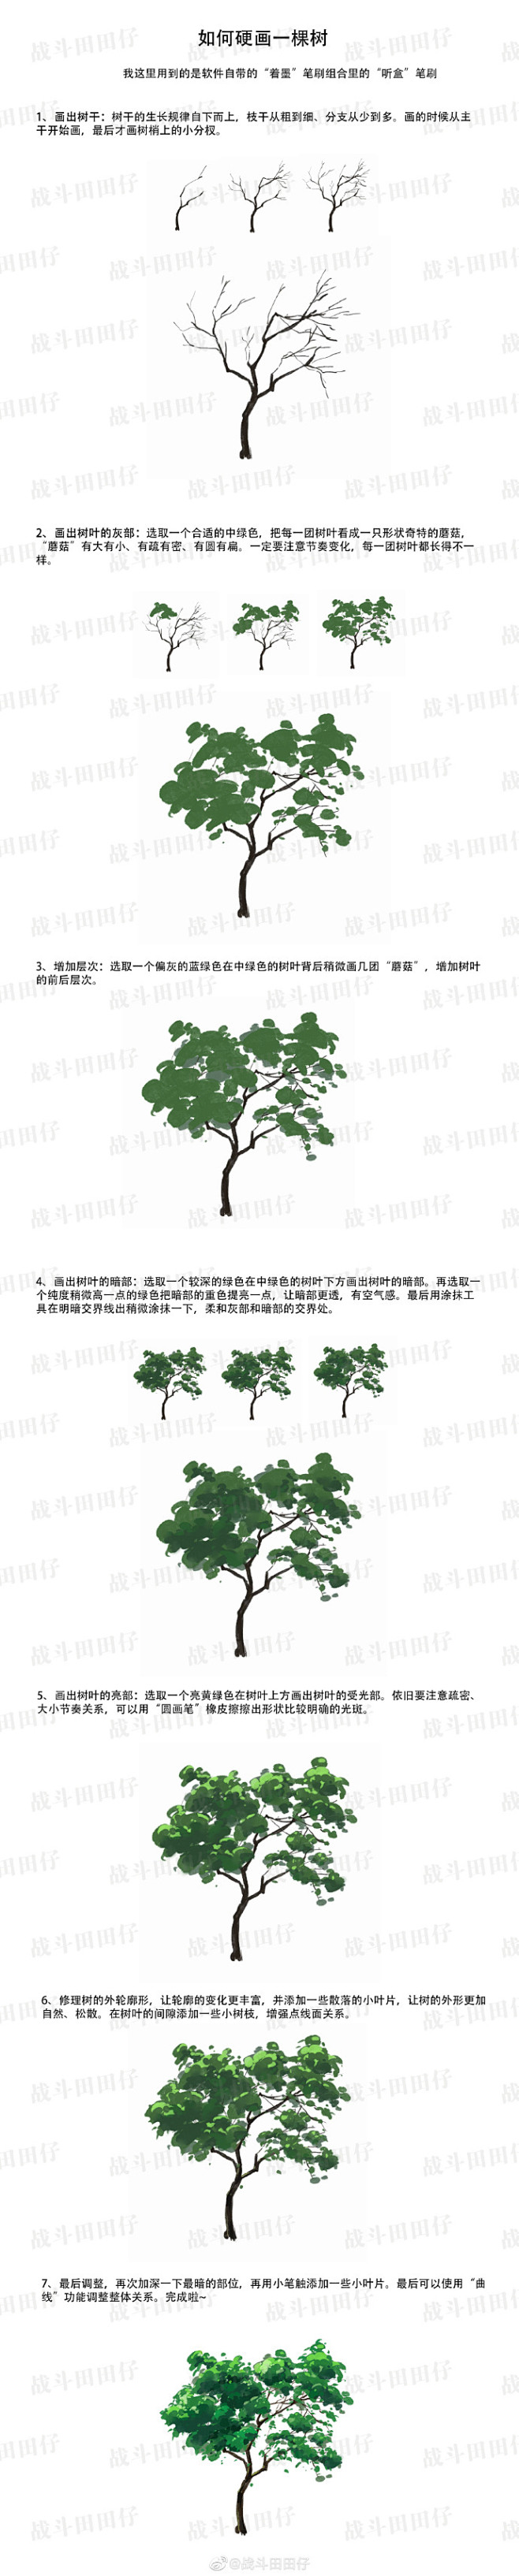 大家好～和@大触来了专栏 合作的树木绘制...